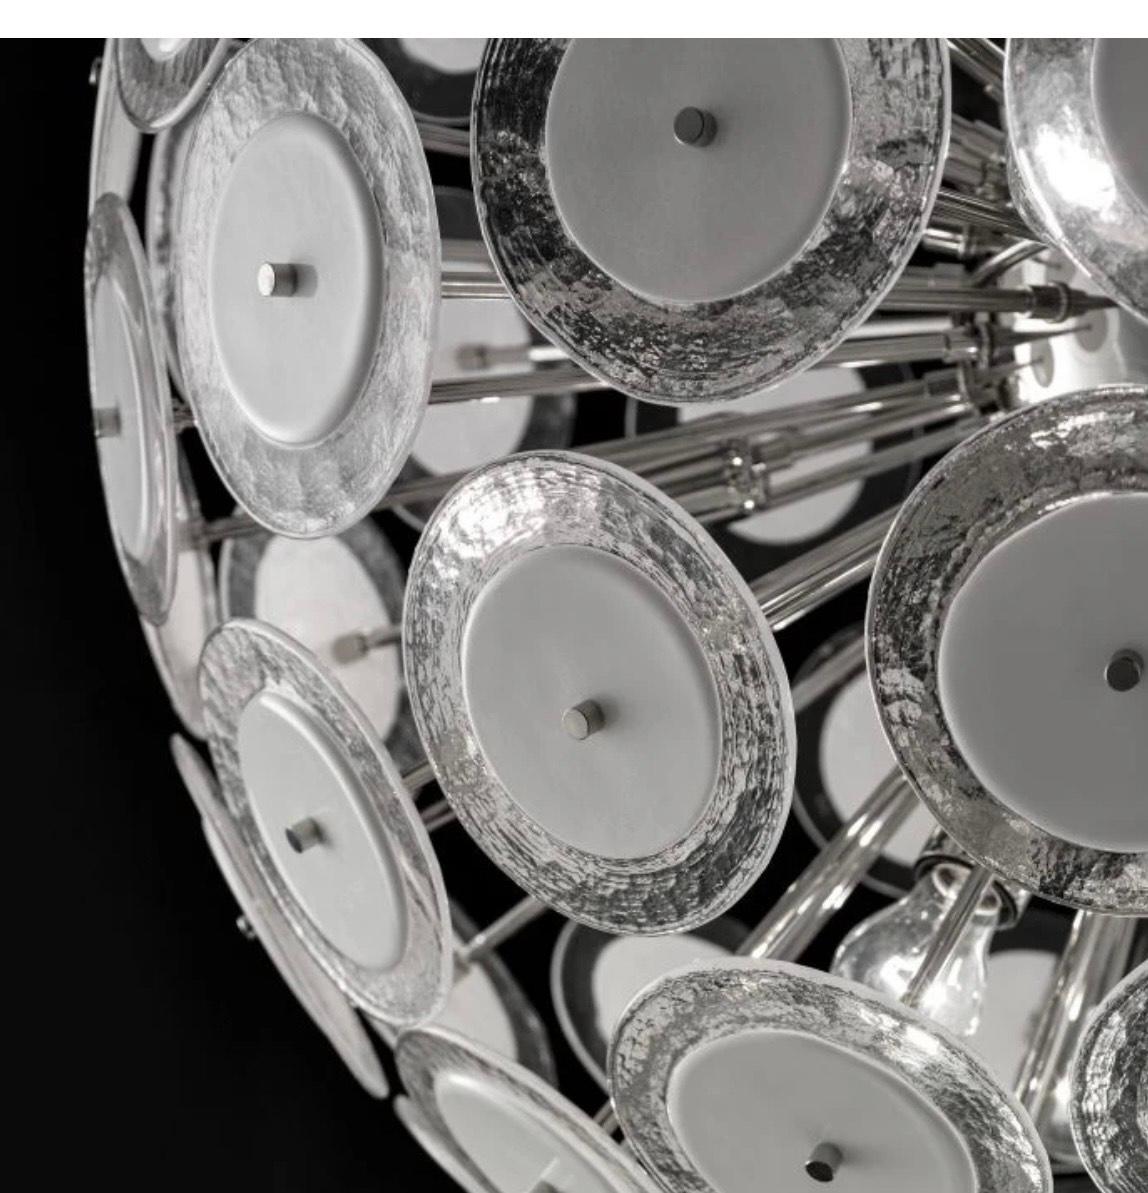 Superbe lampe suspendue Sputnik ronde italienne, composée de disques en verre clair de Murano avec des centres en verre blanc, soufflés à la main selon la technique Pulegoso.

Cette pièce unique et accrocheuse est montée sur un cadre en métal